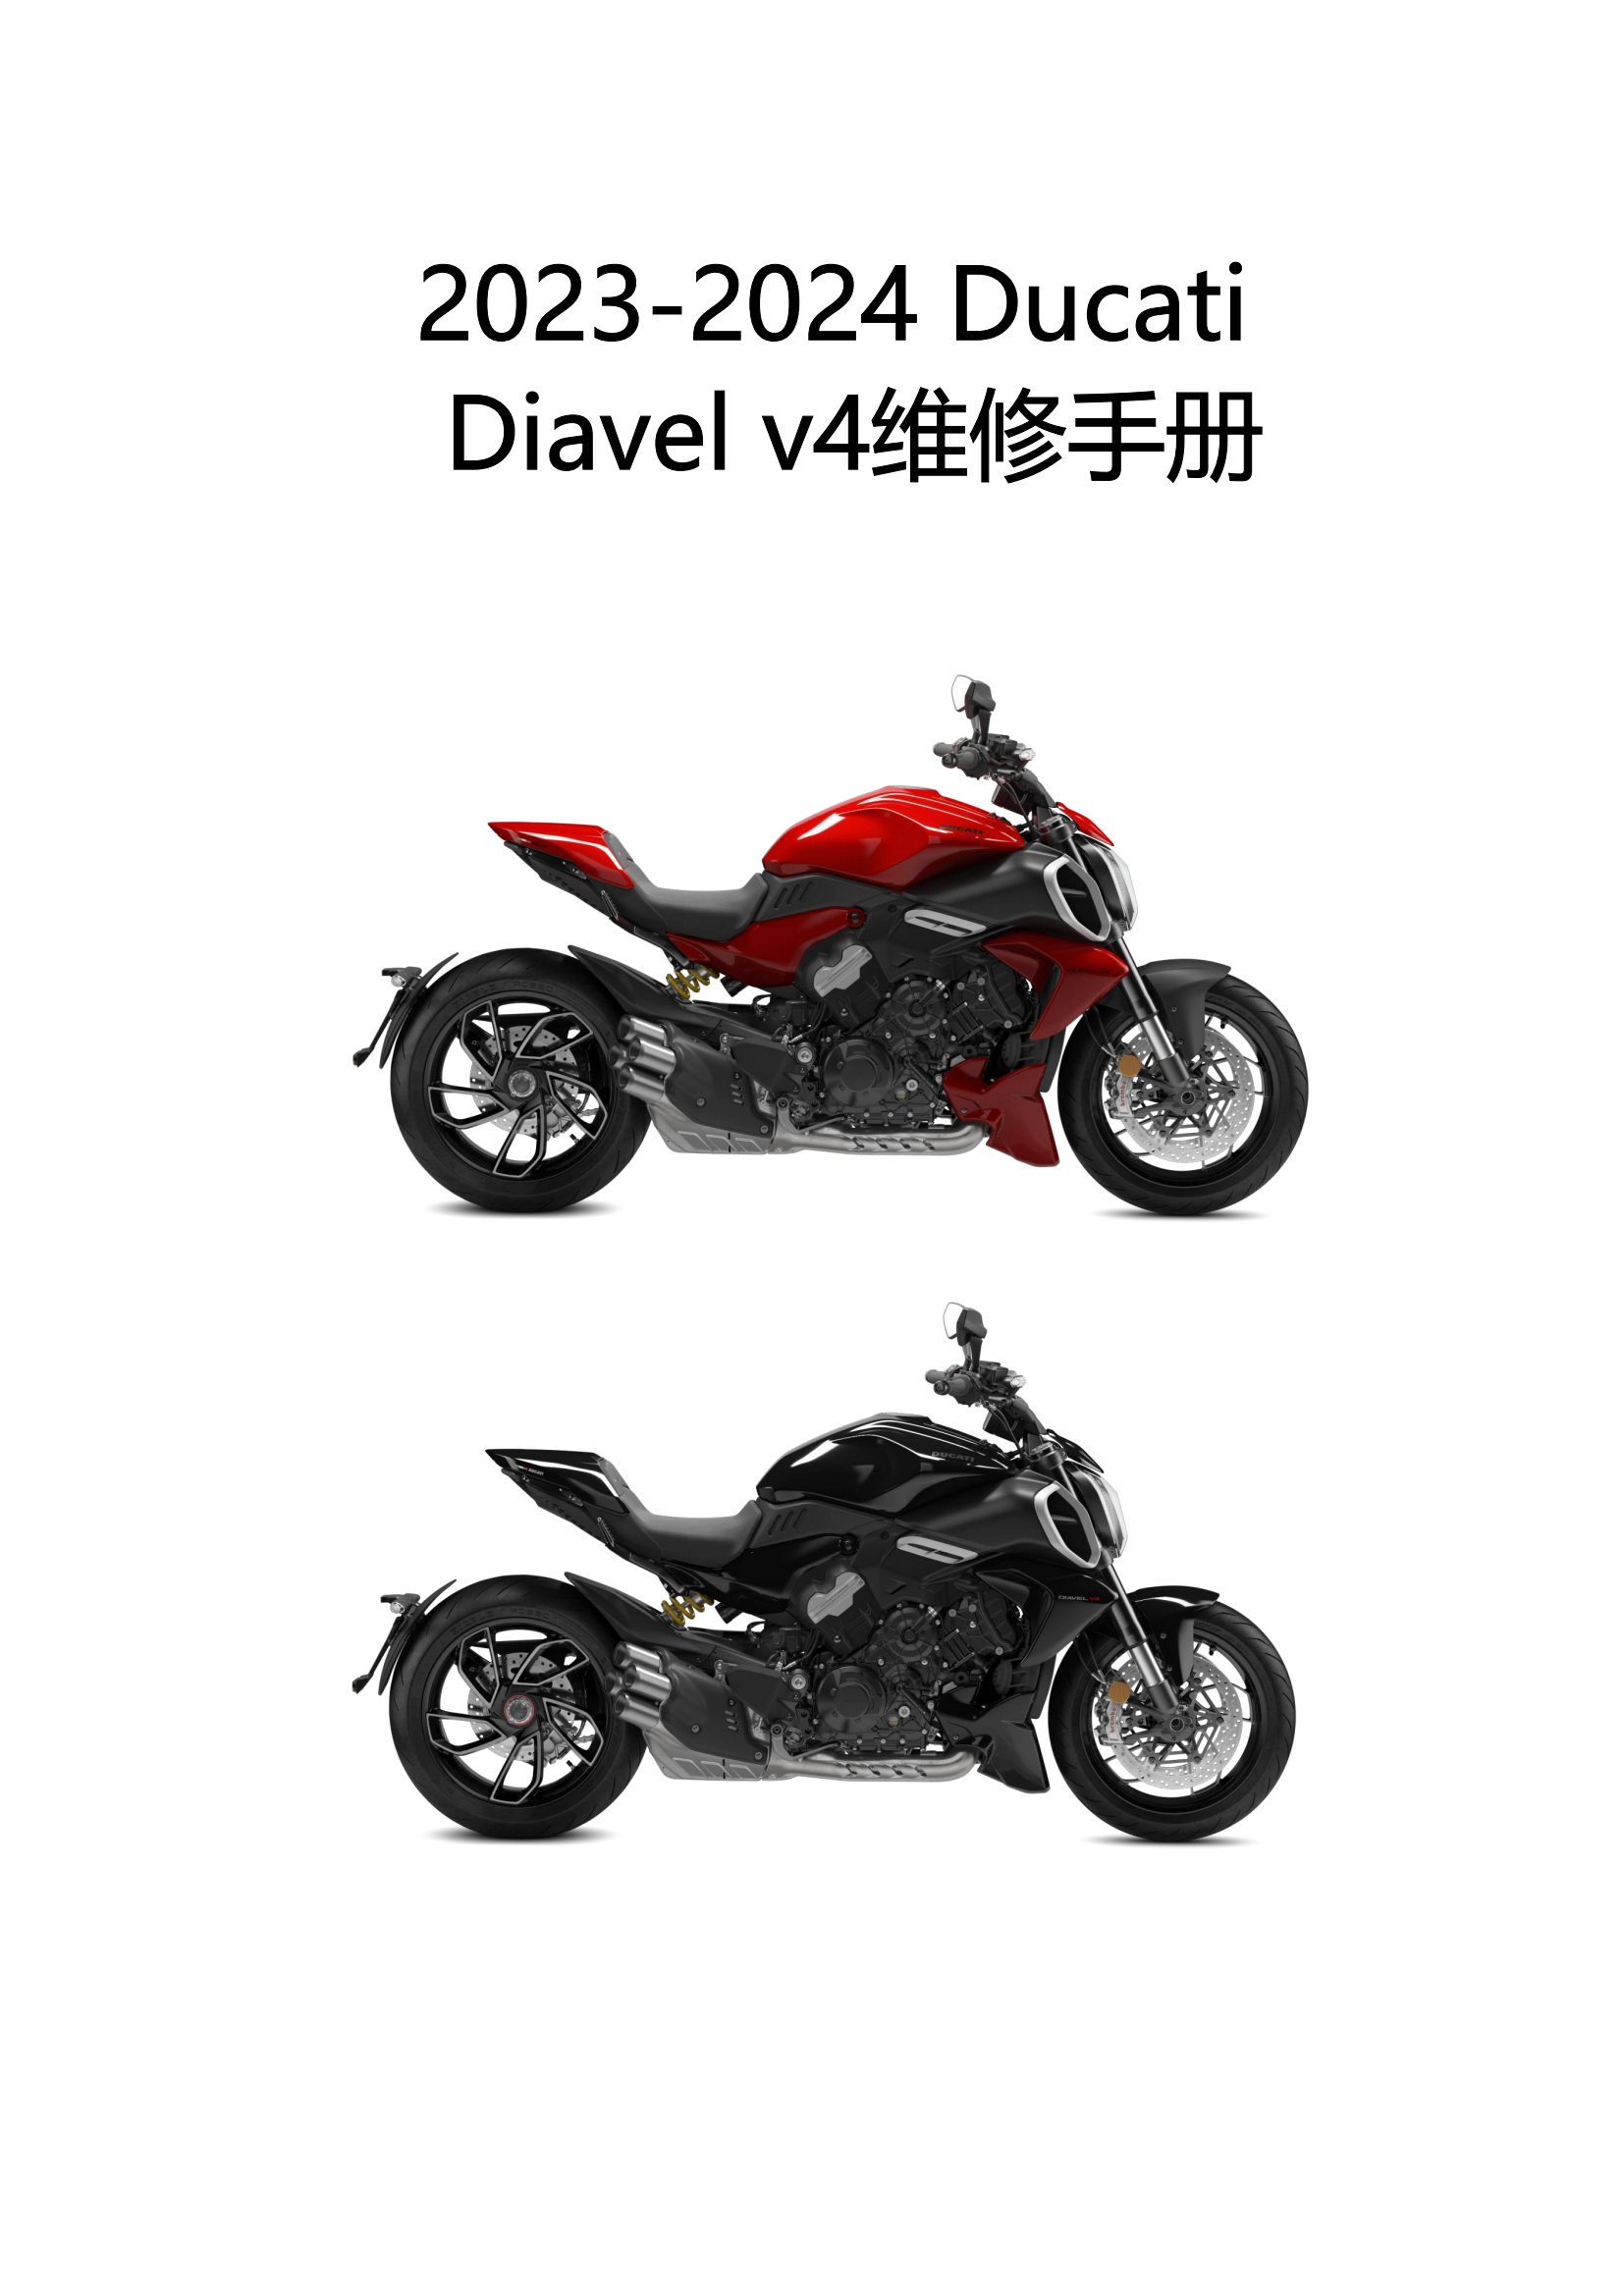 原版中文2023-2024年杜卡迪大魔鬼v4维修手册Ducati 杜卡迪Diavel v4维修手册插图